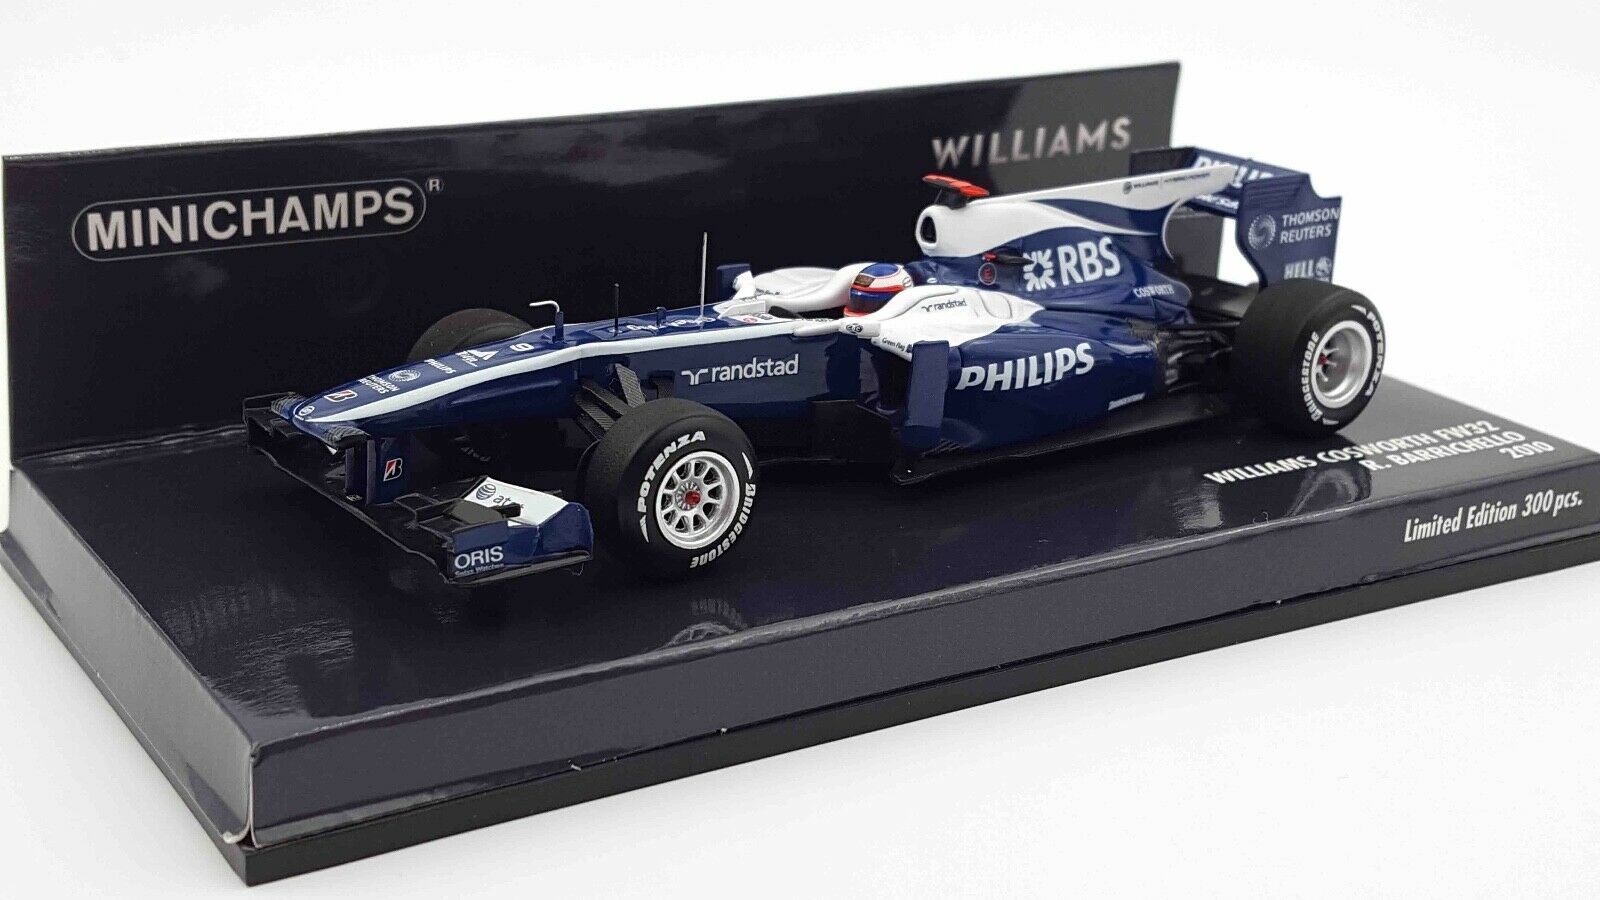 Williams Cosworth FW32 Rubens Barrichello 2010 Minichamps 1/43